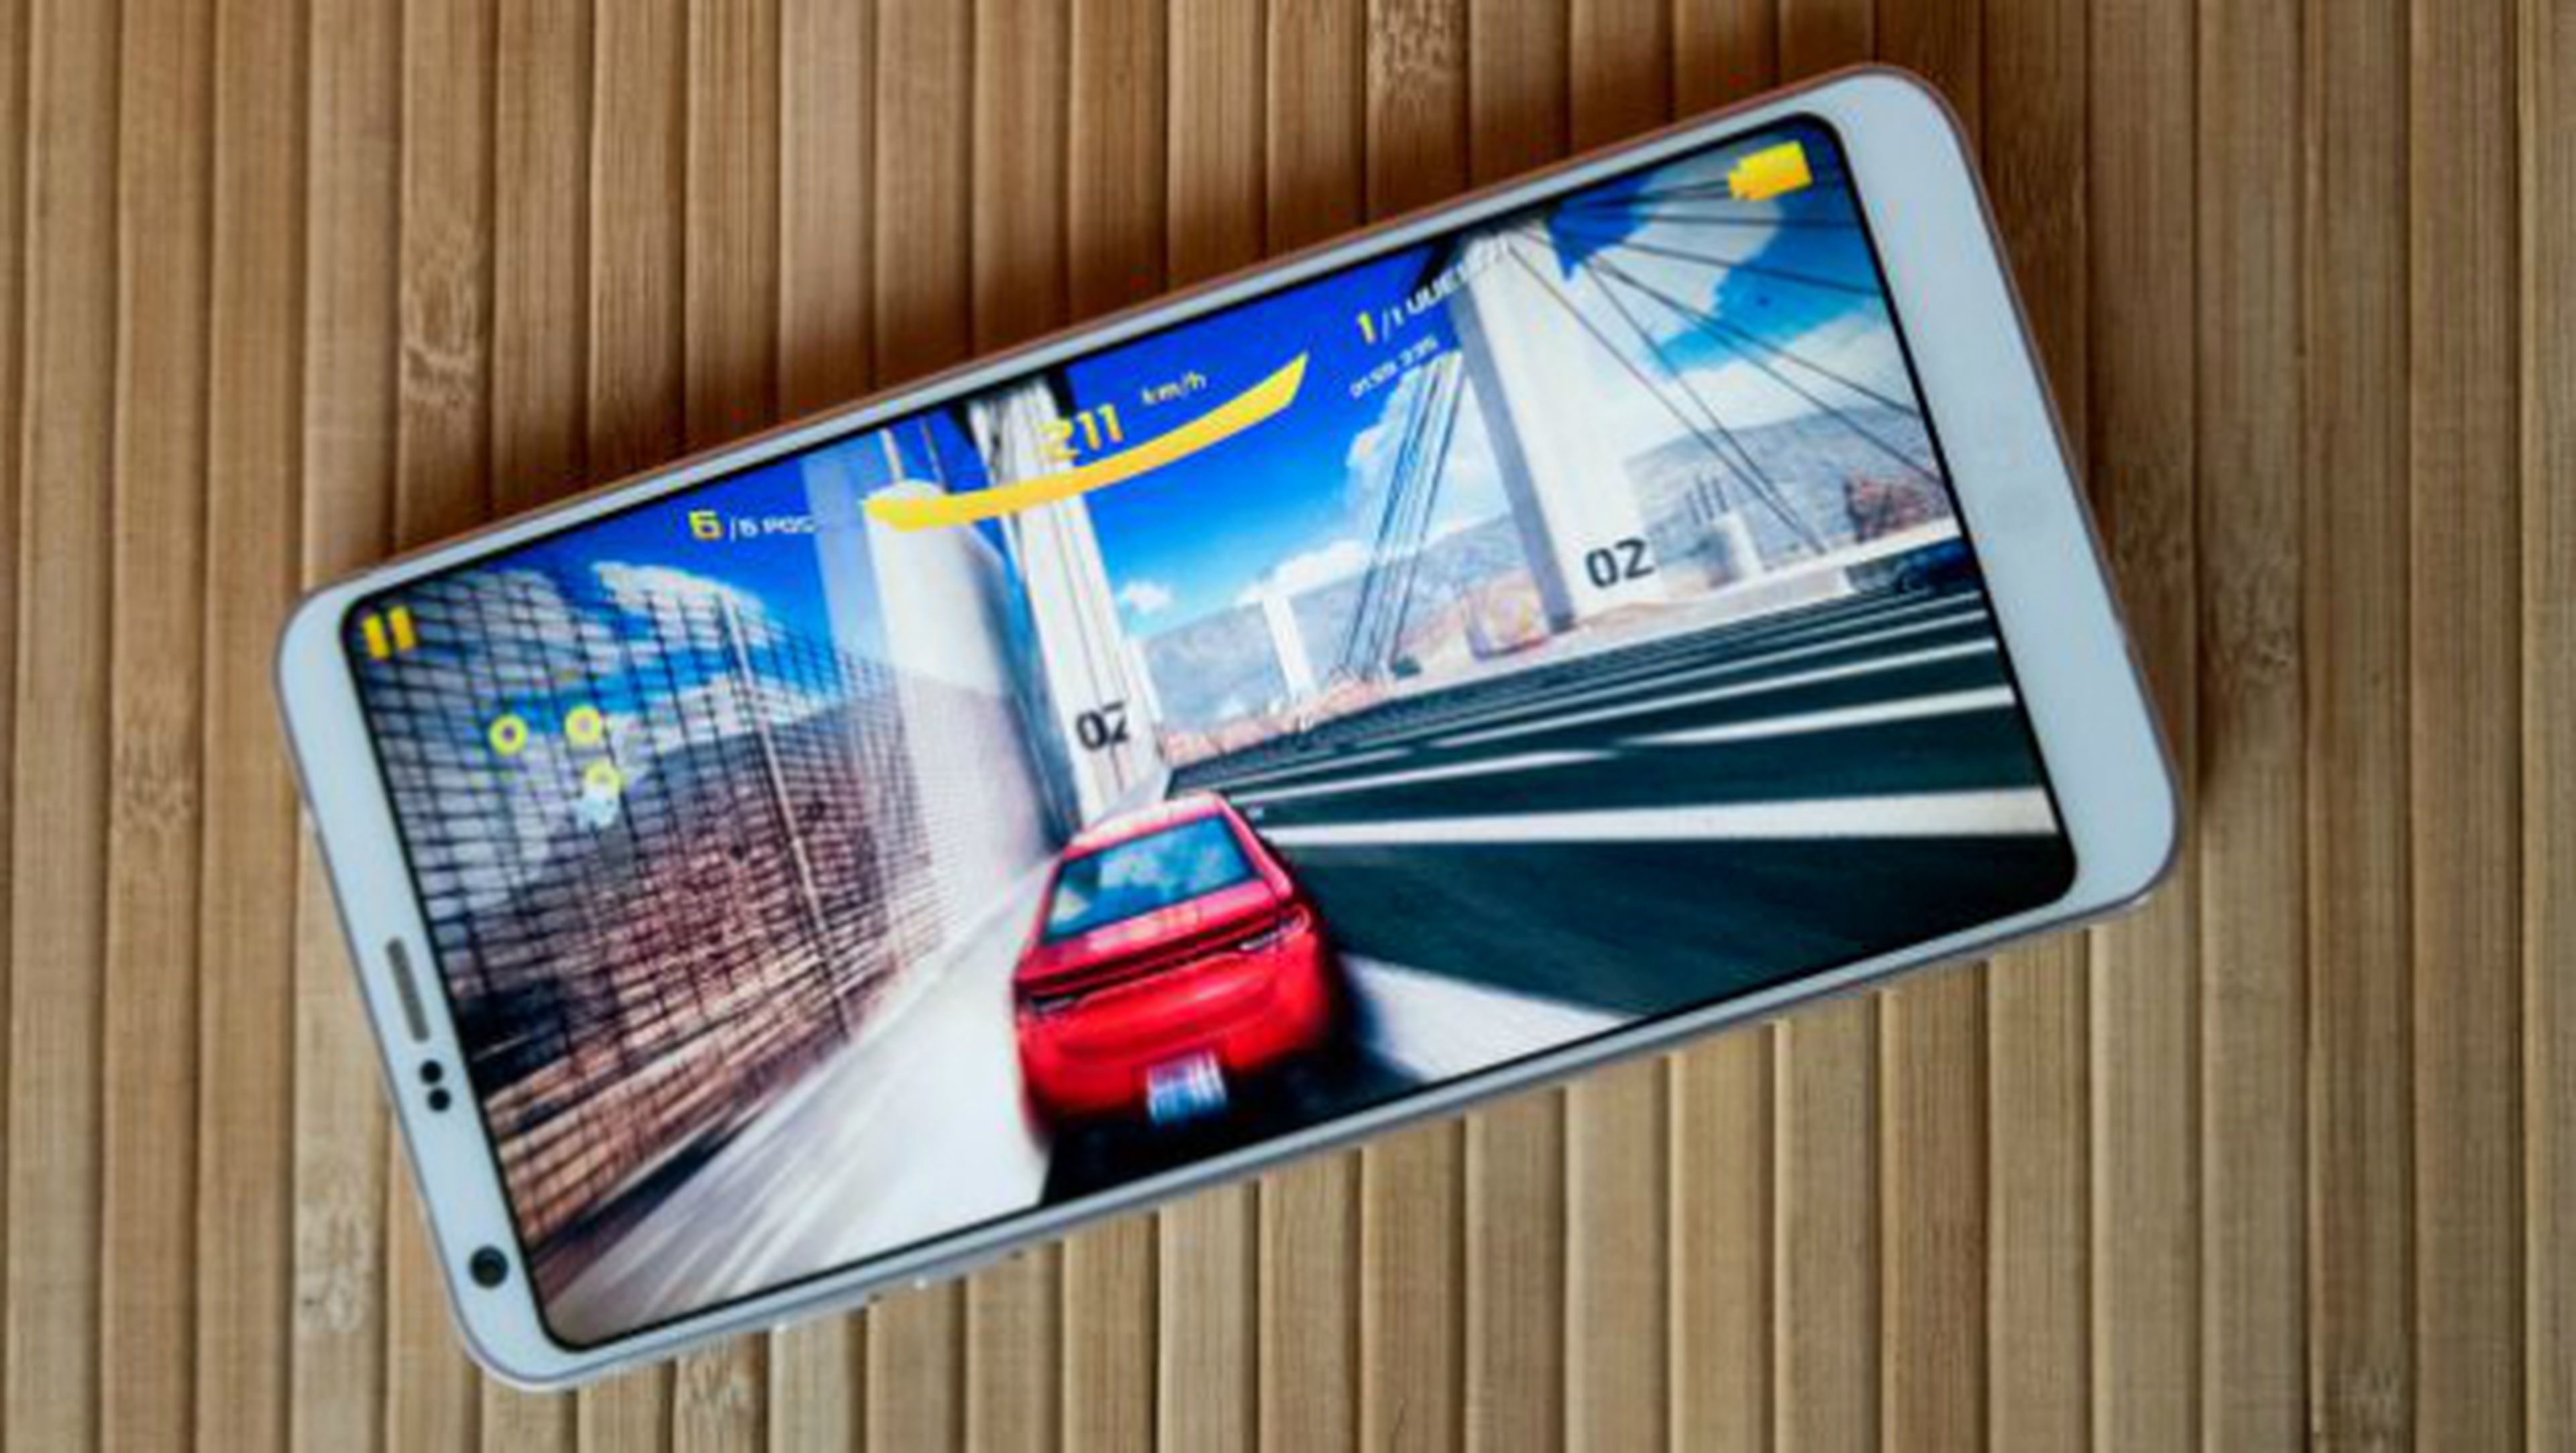 LG anuncia una actualización para el G6 y un nuevo móvil, el G6+.